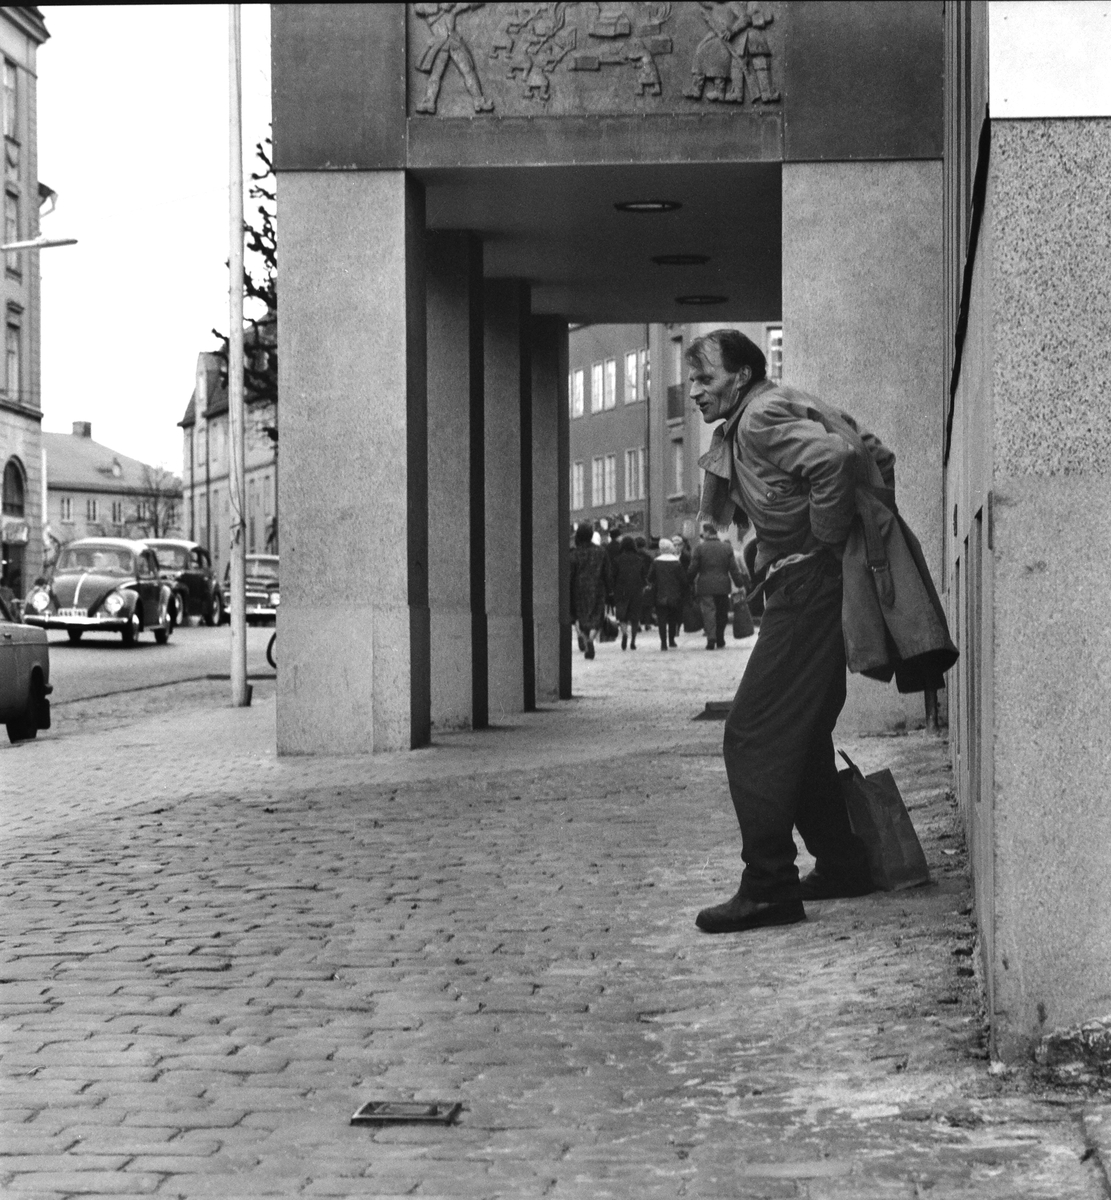 Lördagseftermiddag i Södertälje, 1961.
Pressfotografier från 1950-1960-talet. Samtliga bilder är tagna i Östergötland, de flesta i Linköping.